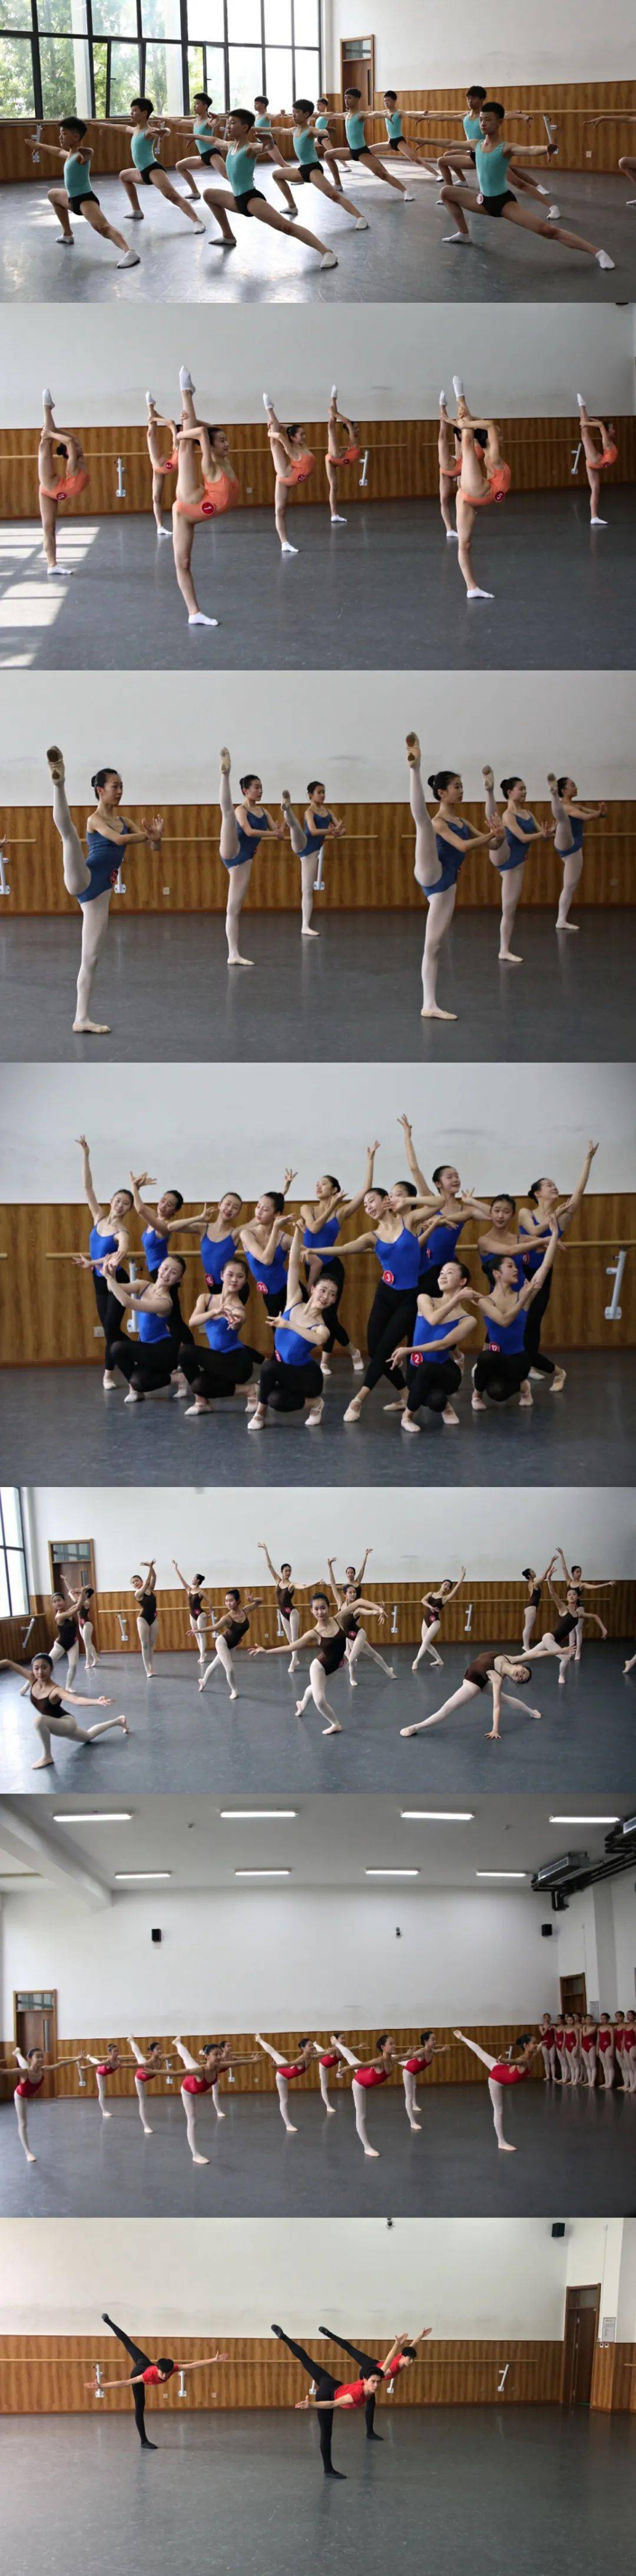 青岛艺术学校舞蹈专业2019-2020学年第二学期专业考试圆满完成